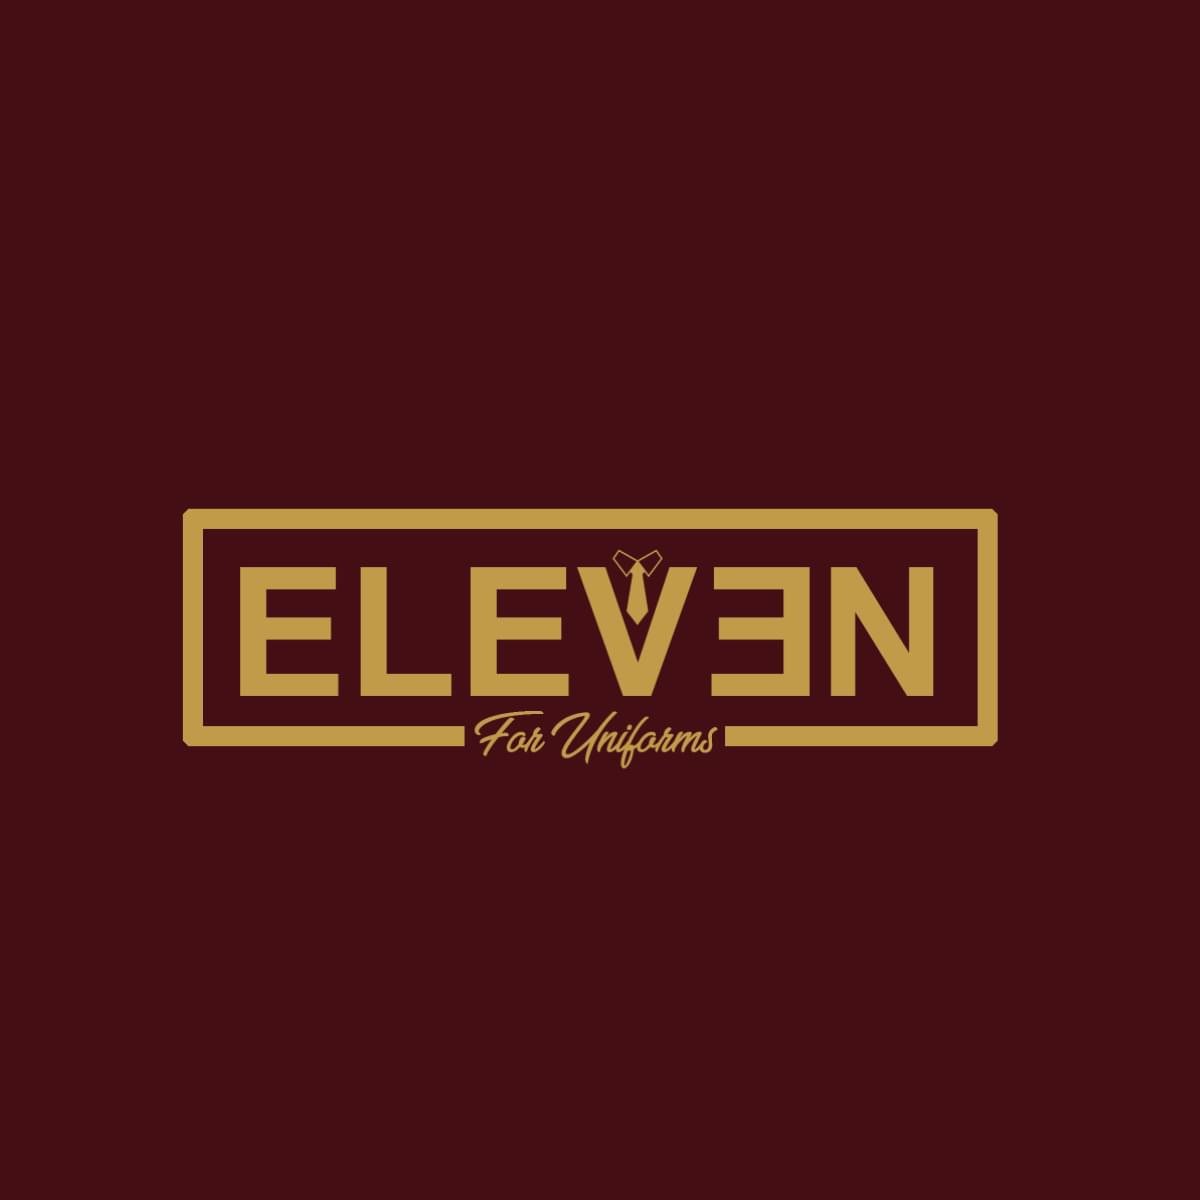 Eleven uniform cover